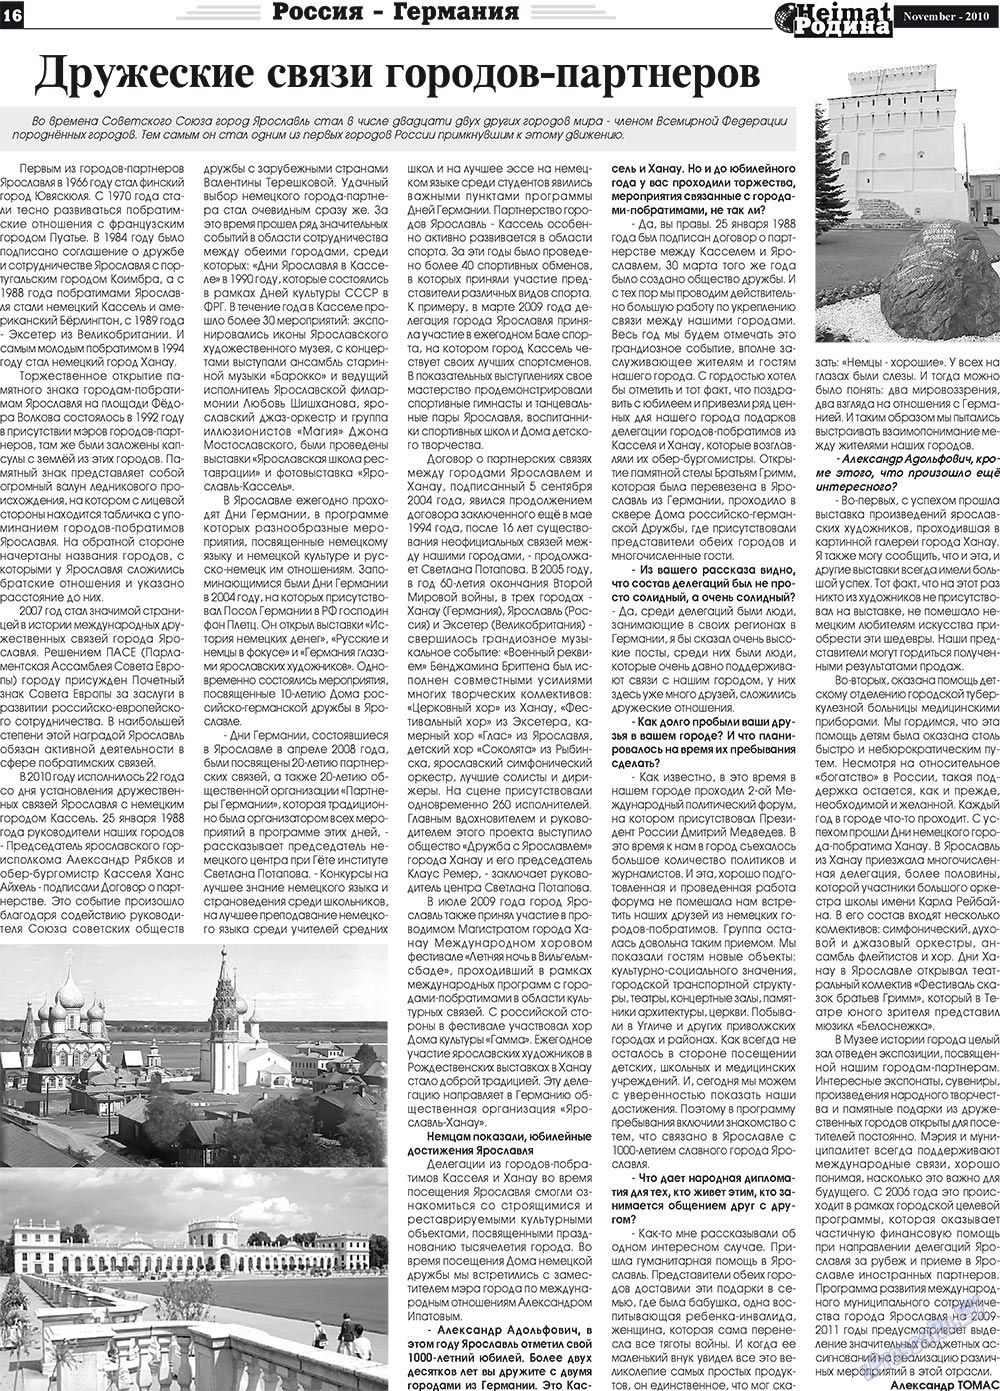 Heimat-Родина (газета). 2010 год, номер 11, стр. 16